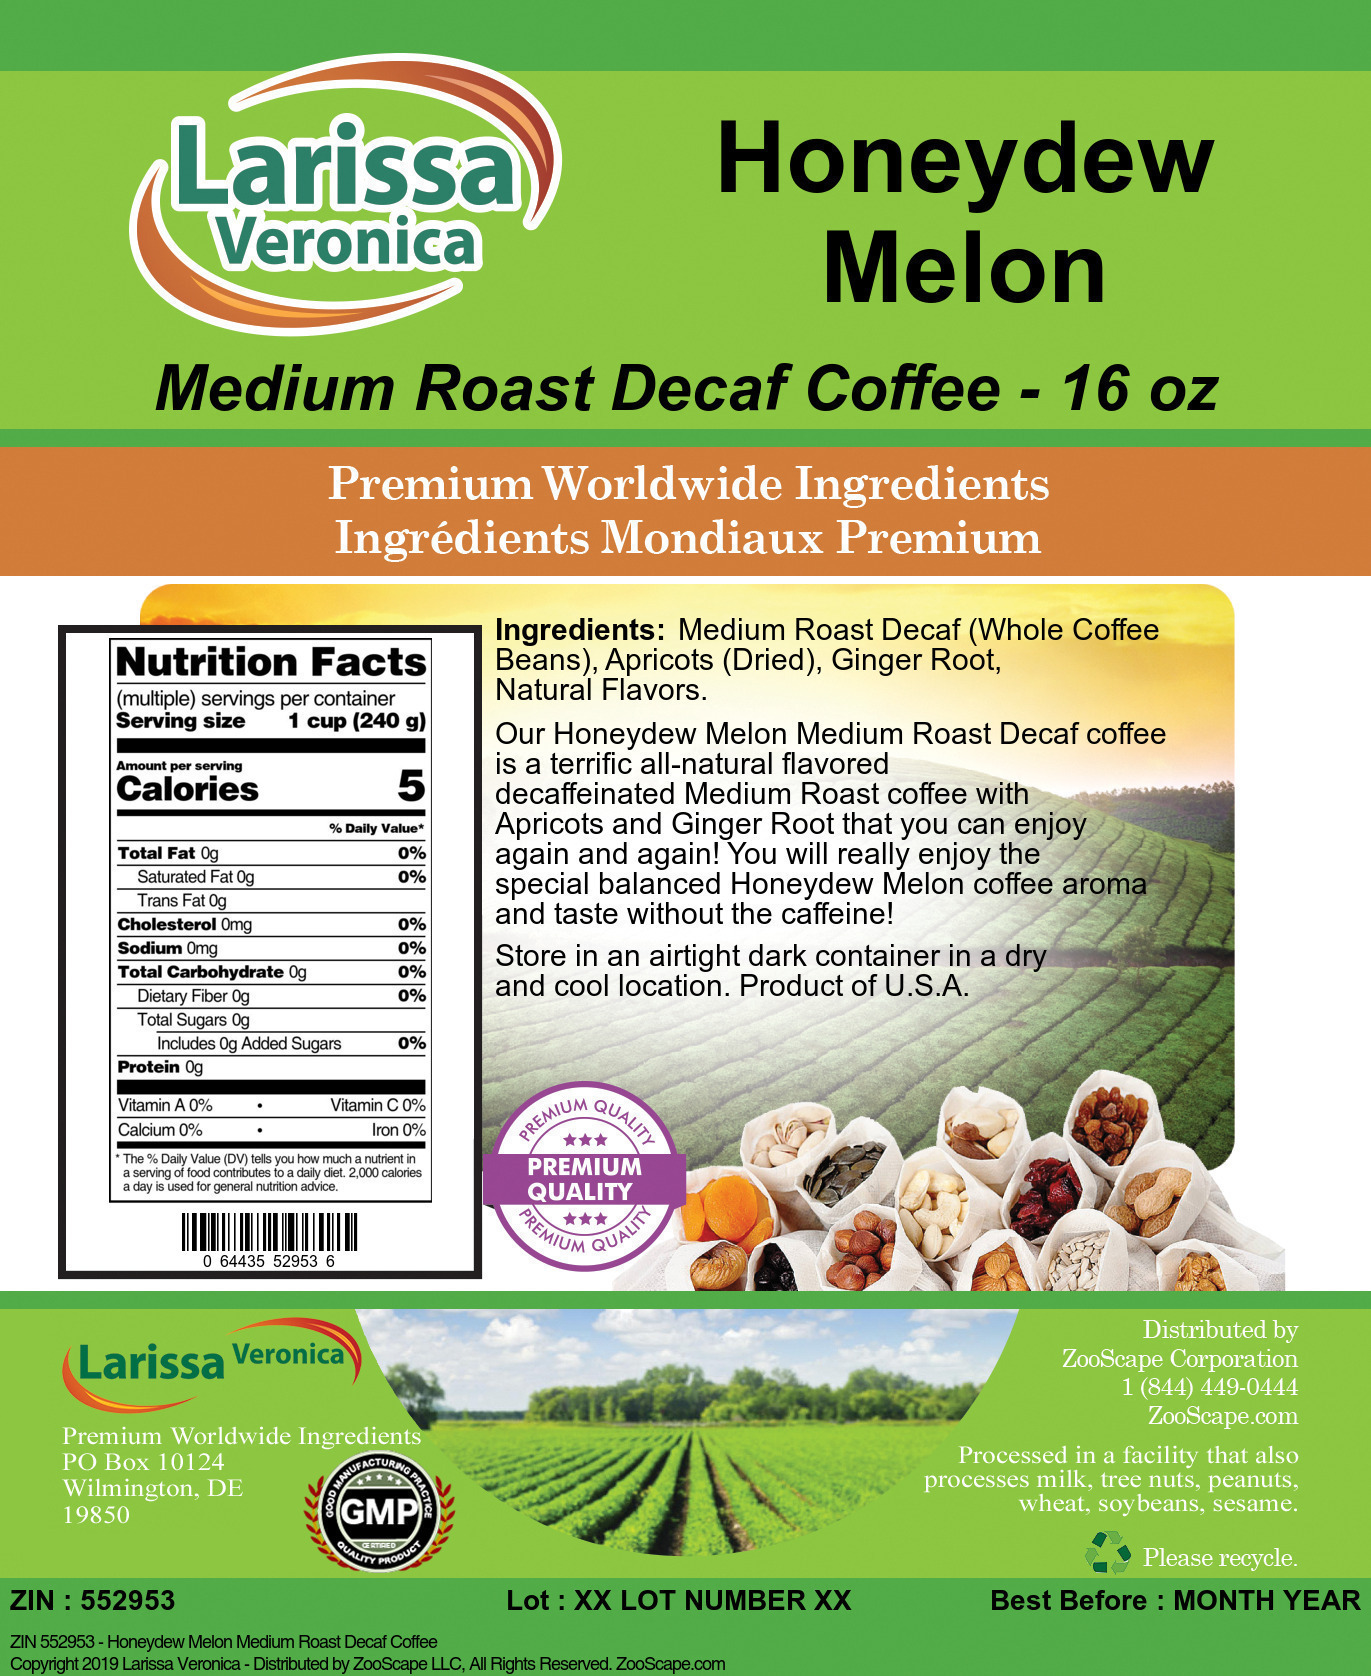 Honeydew Melon Medium Roast Decaf Coffee - Label